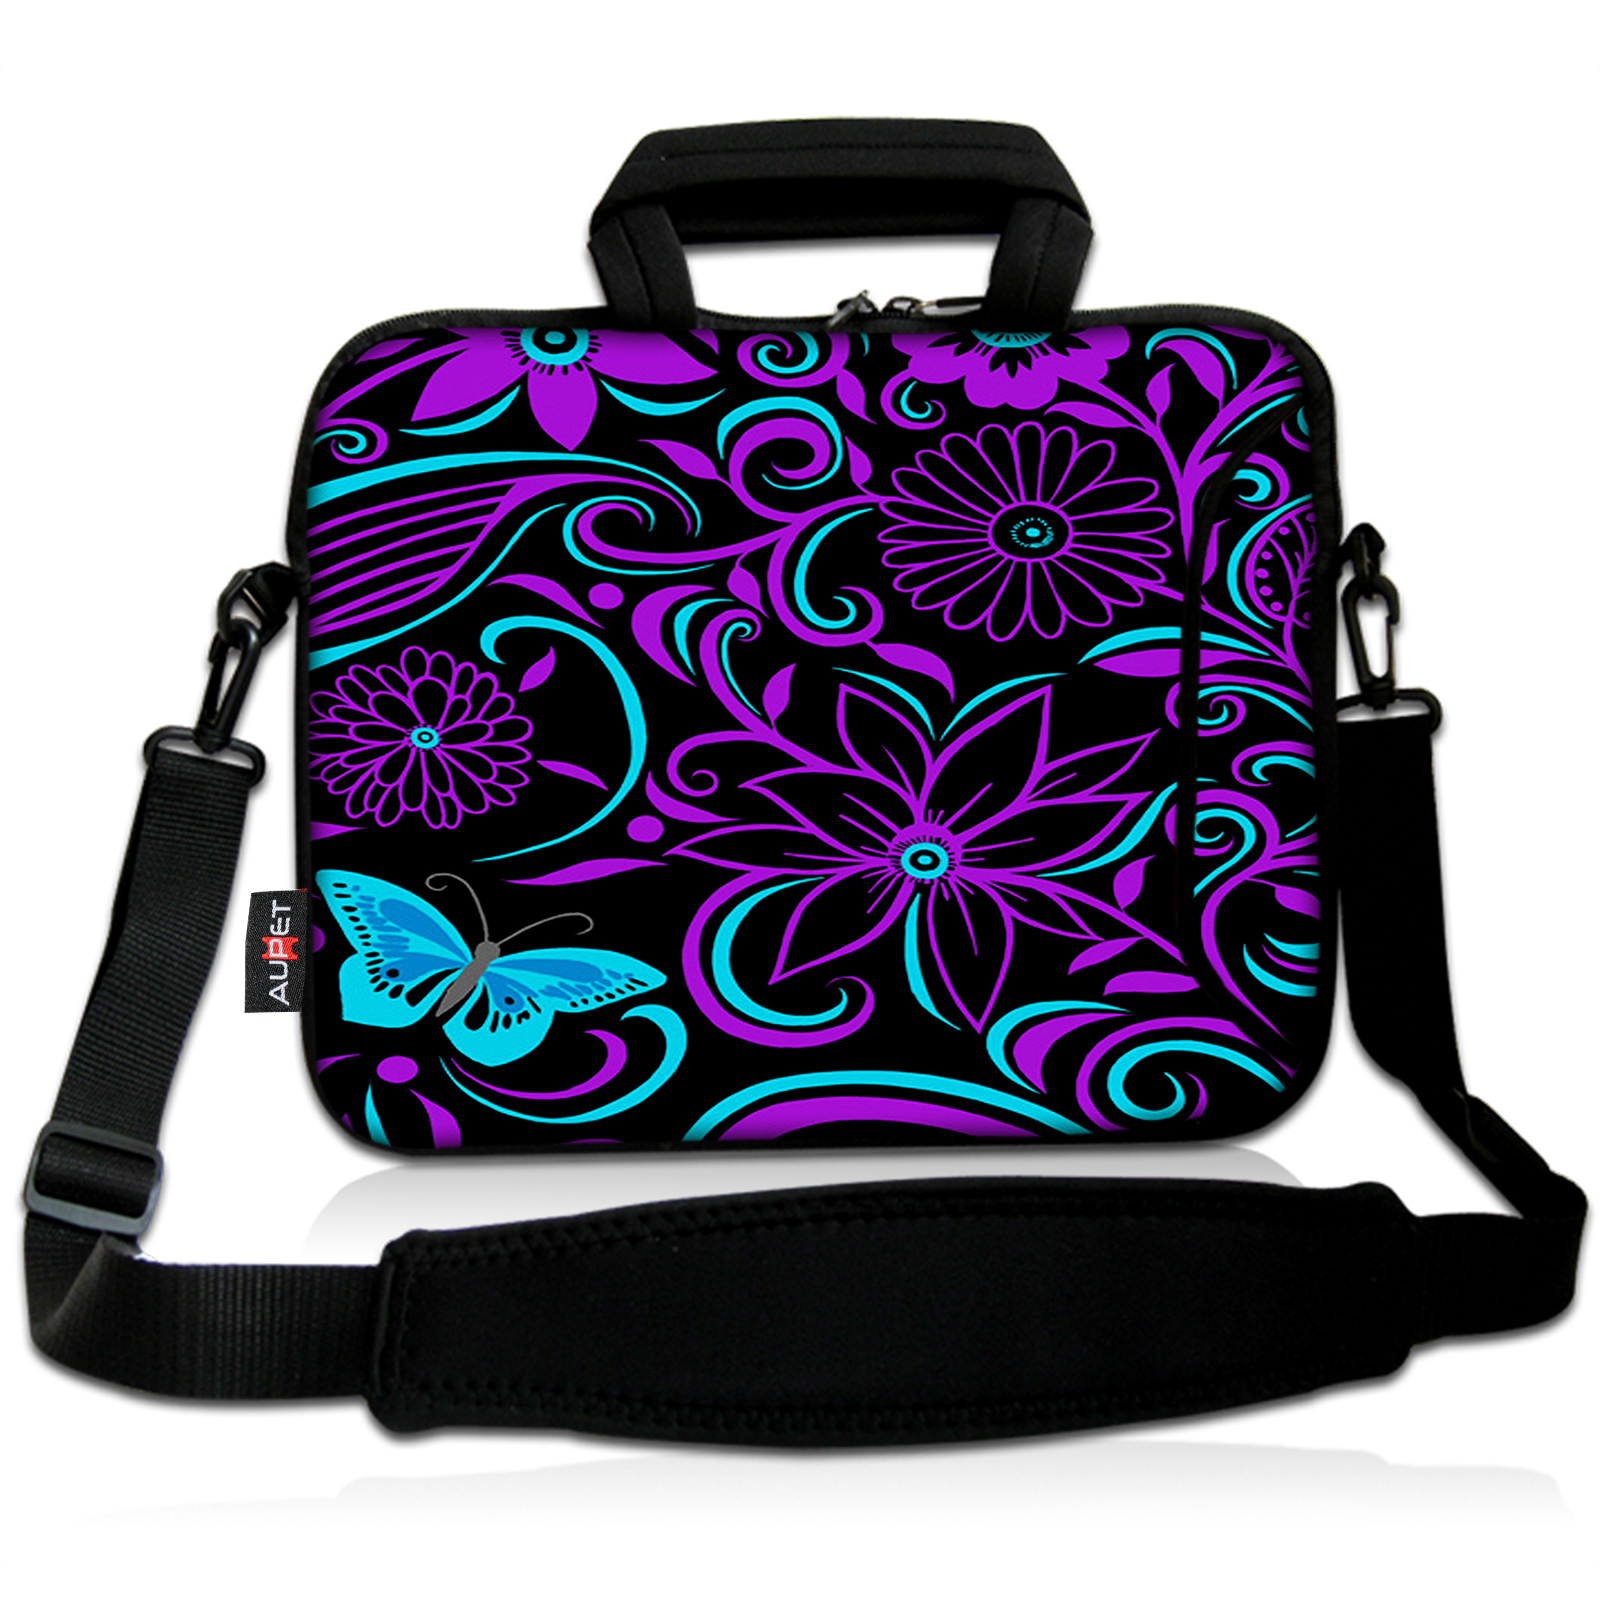 15" Laptop Shoulder Messenger Bag 14.1" 15.6" Laptop Notebook Case Cover Holder(Purple Flower)